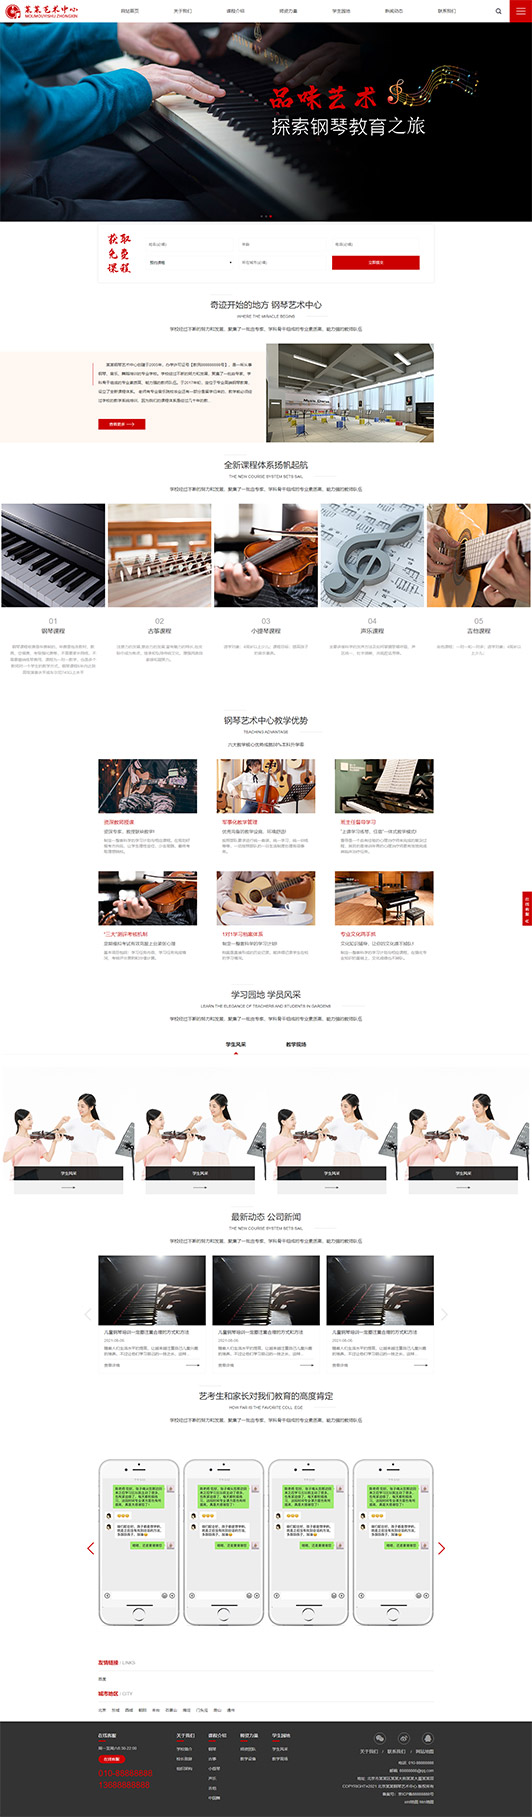 平凉钢琴艺术培训公司响应式企业网站